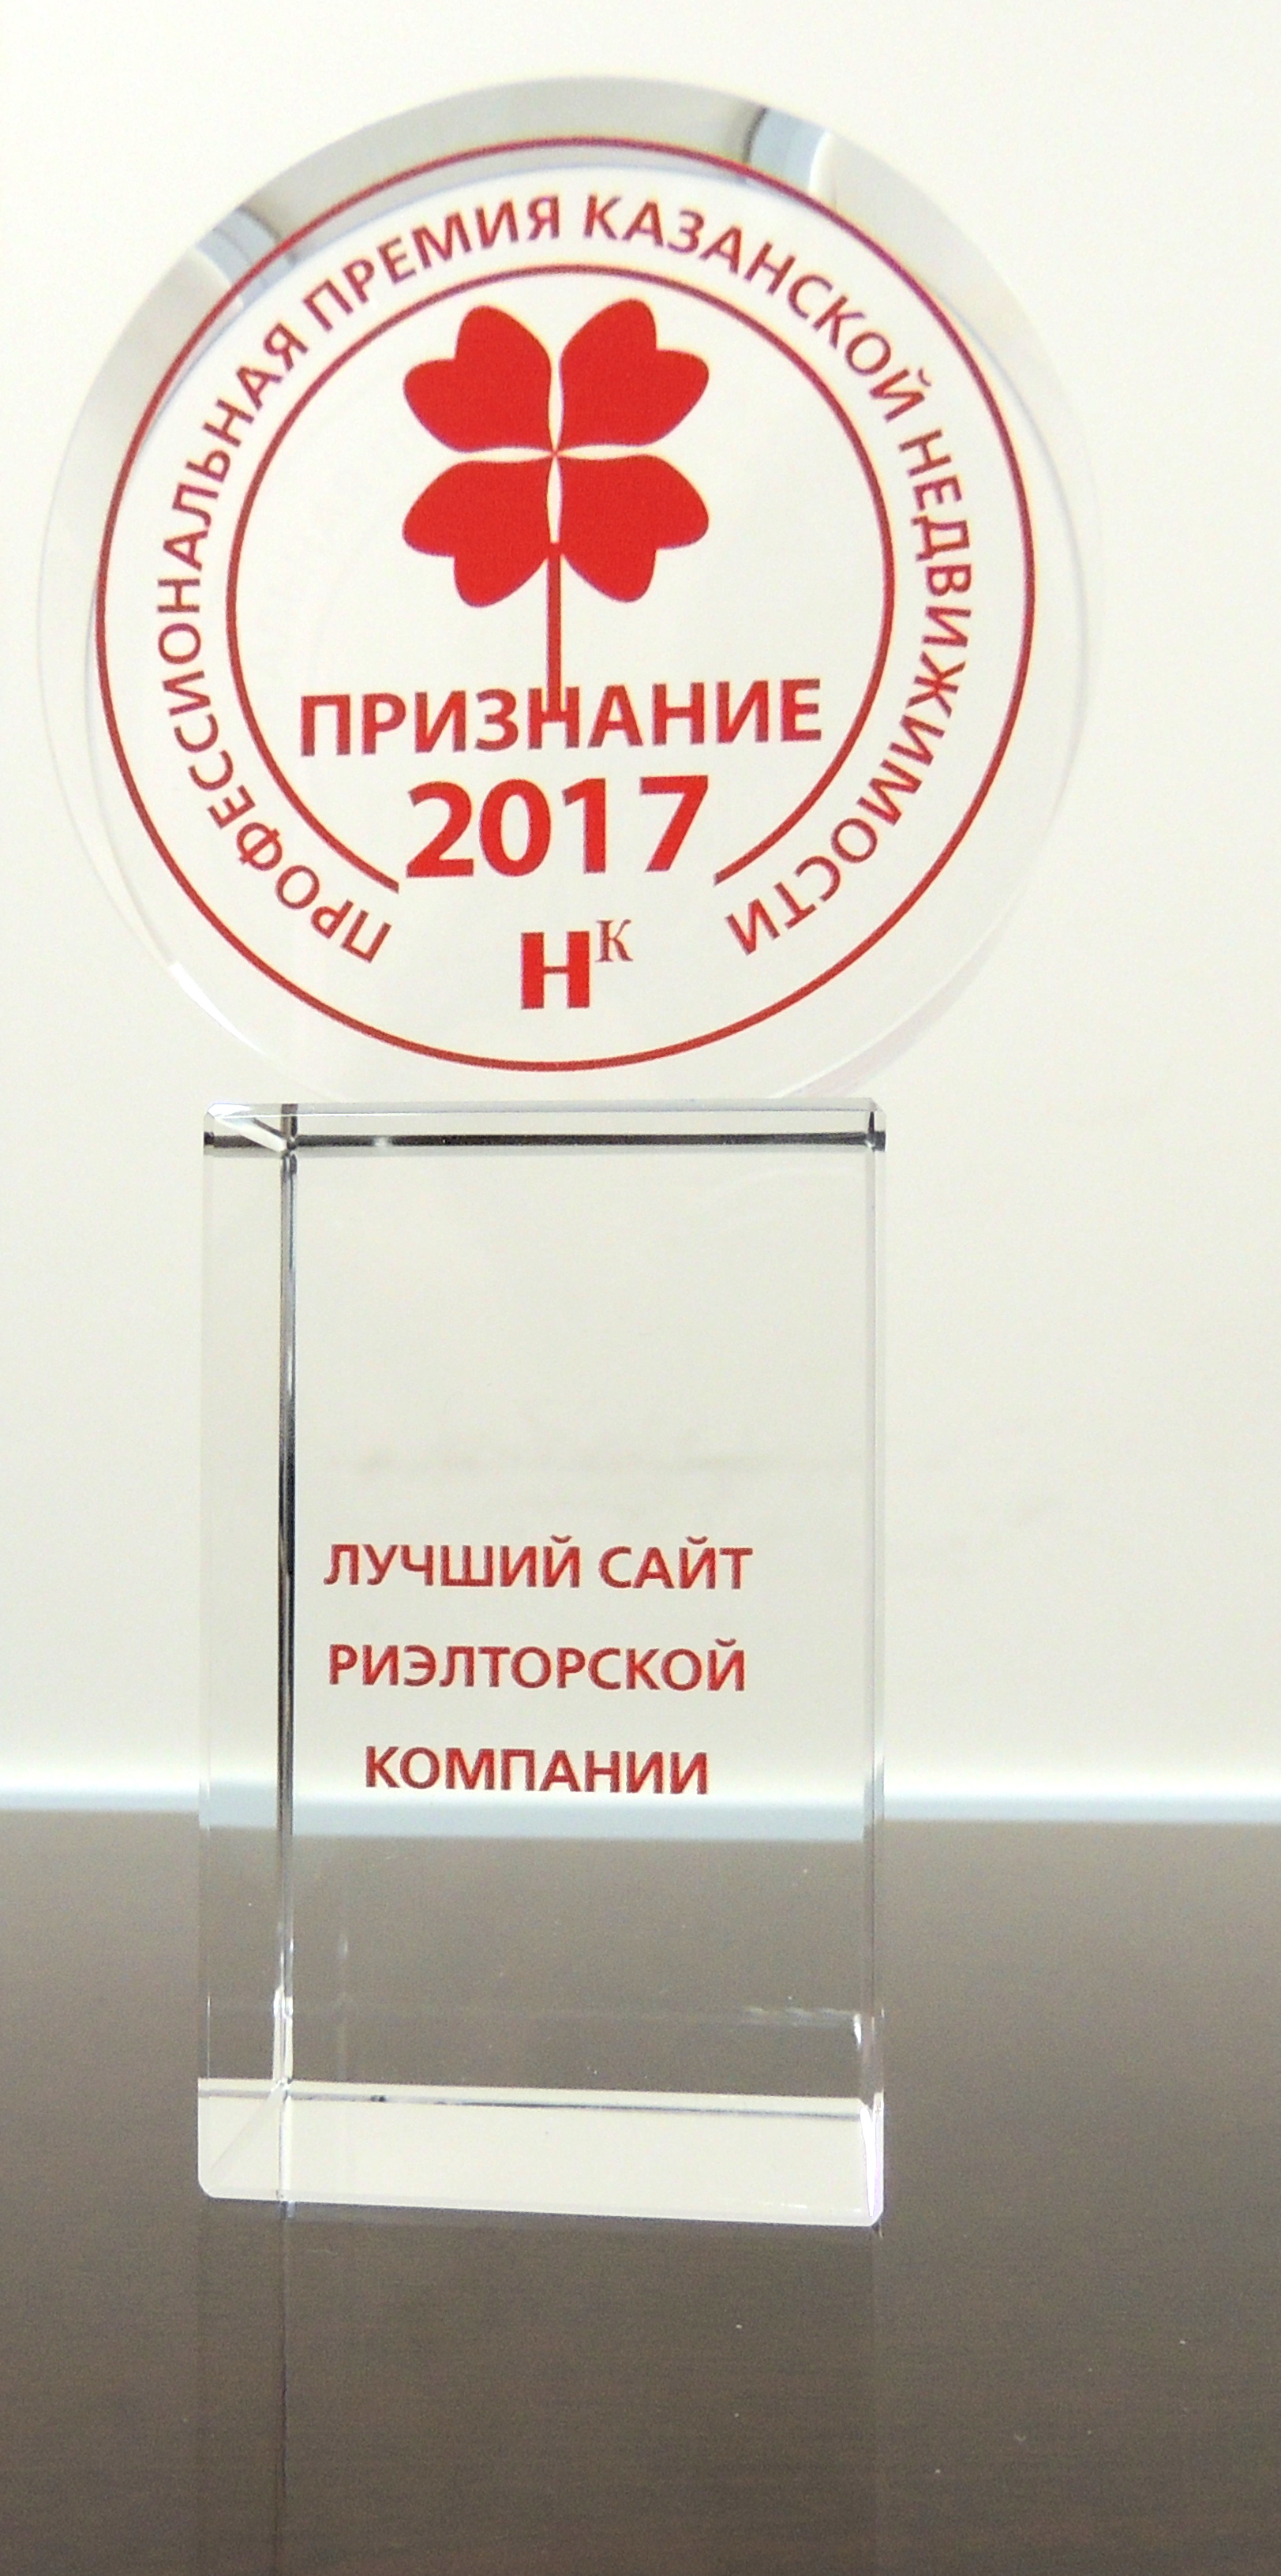 Премия "Признание-2017"